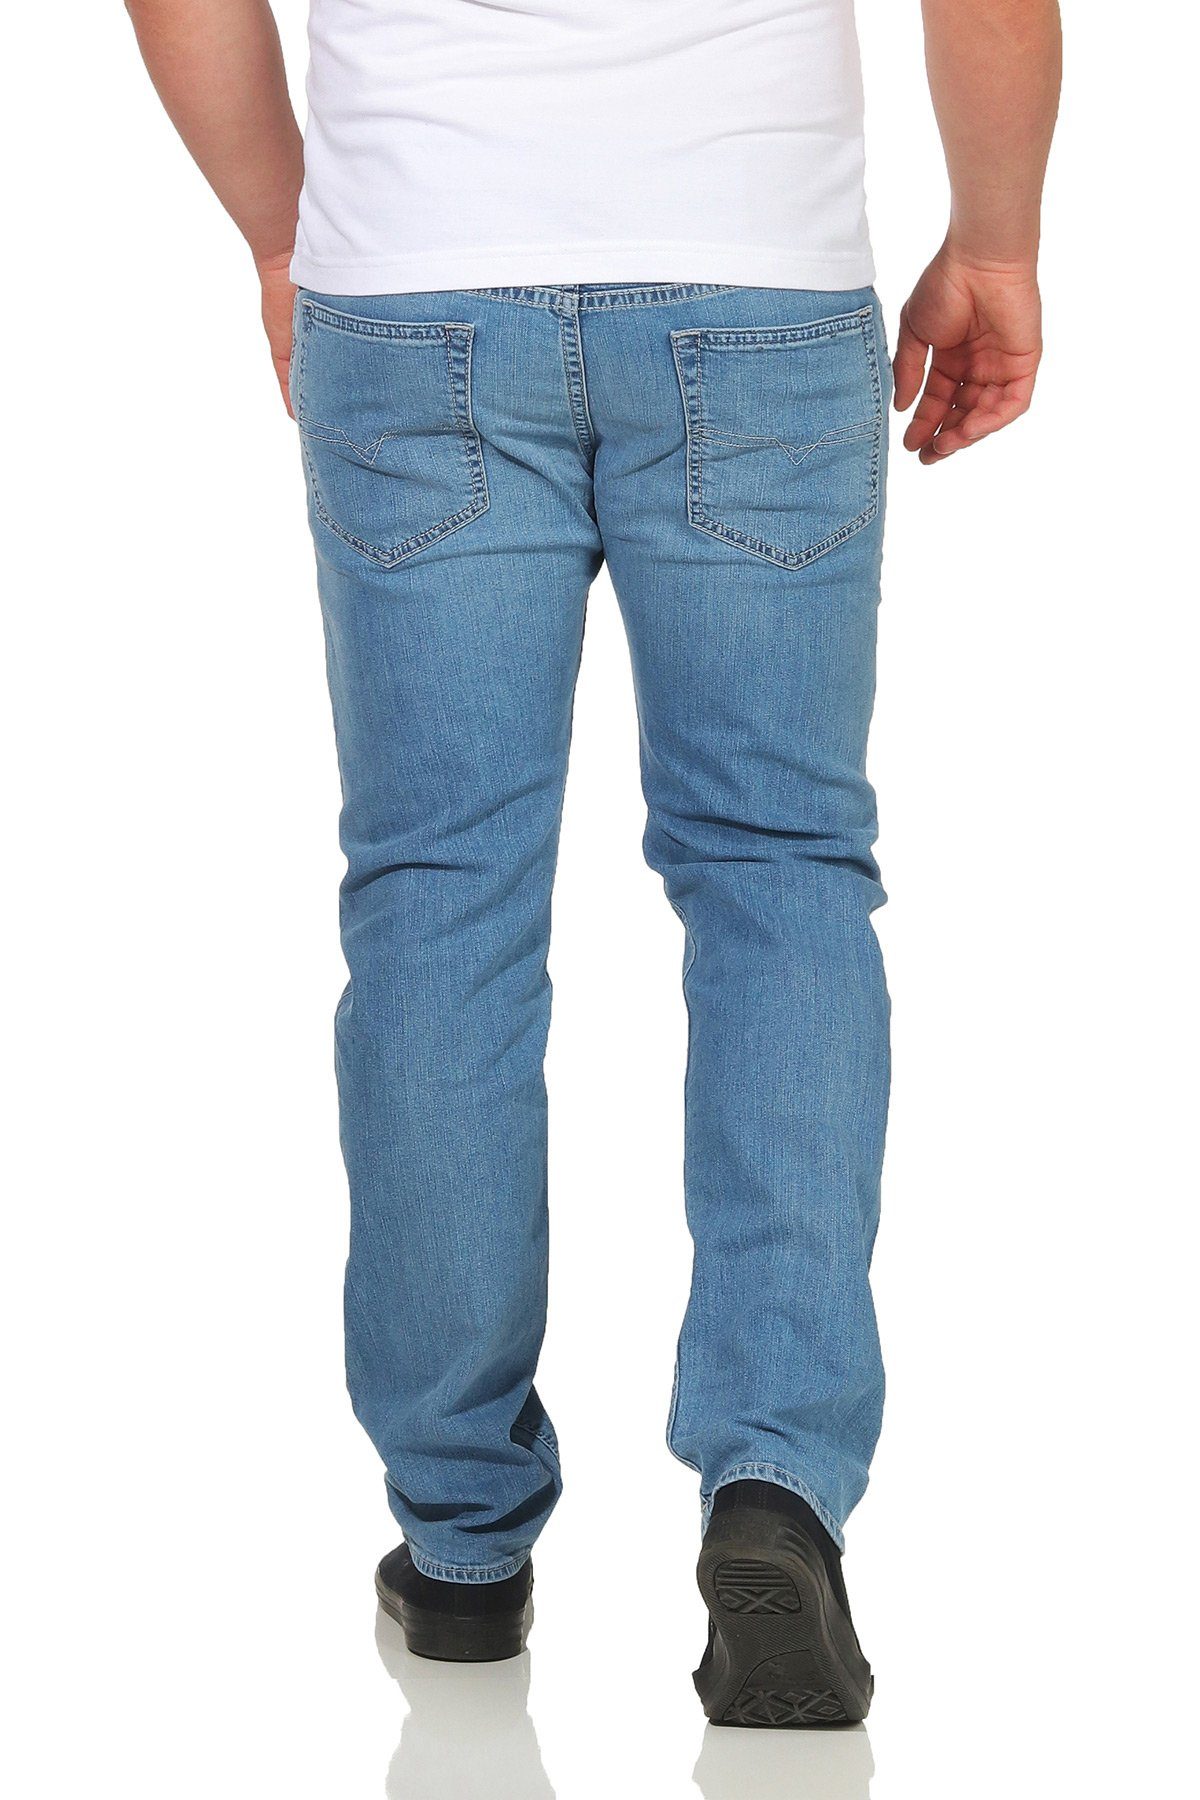 Jeans Diesel Hellblau, Stretch, Diesel 084QN Used-Look Herren Buster Tapered, 5-Pocket-Style, Regular-fit-Jeans